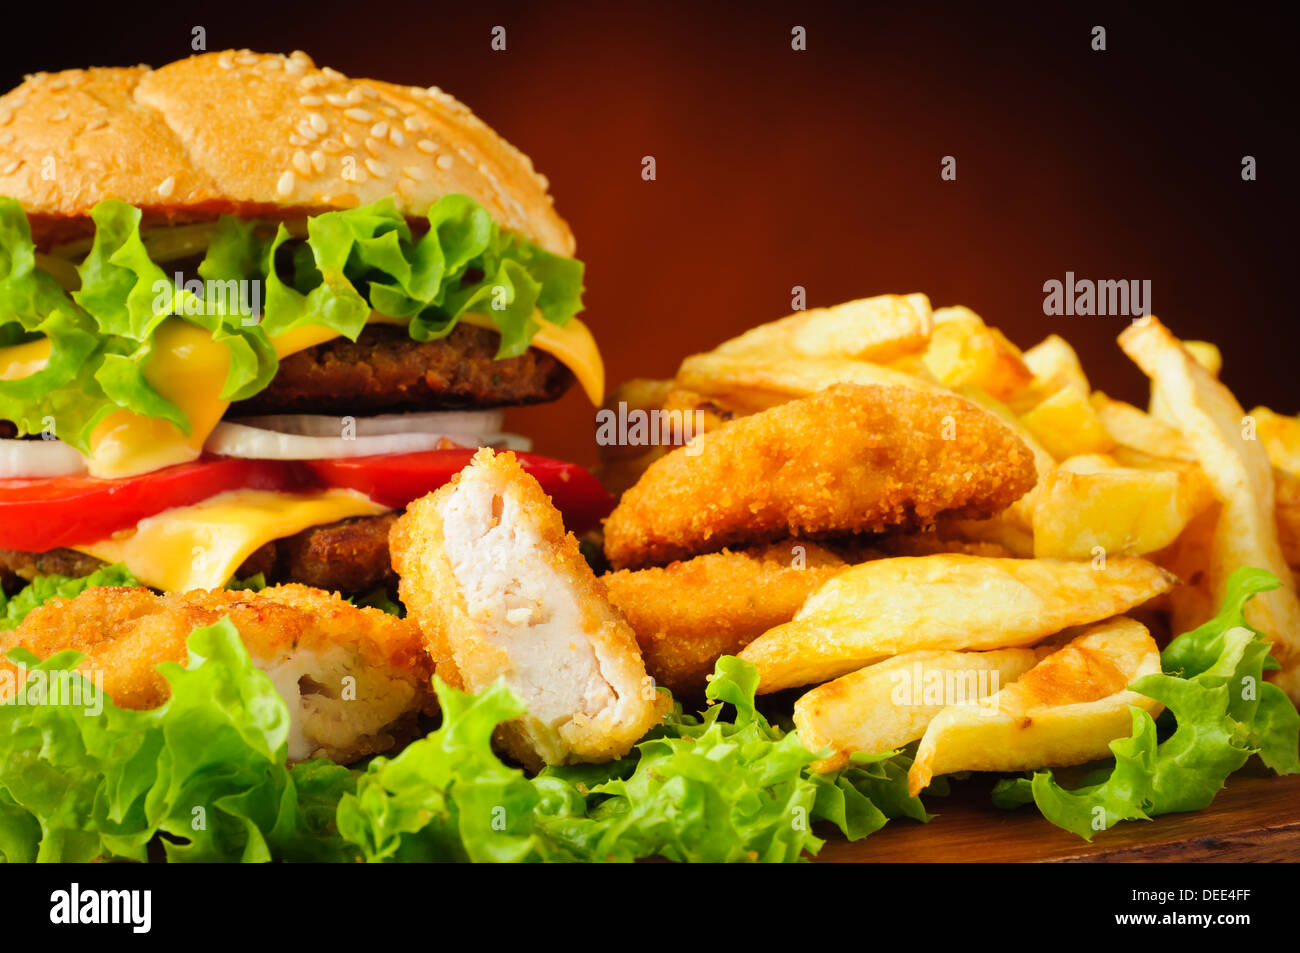 Restauration rapide menu avec des nuggets de poulet, hamburgers et frites Banque D'Images